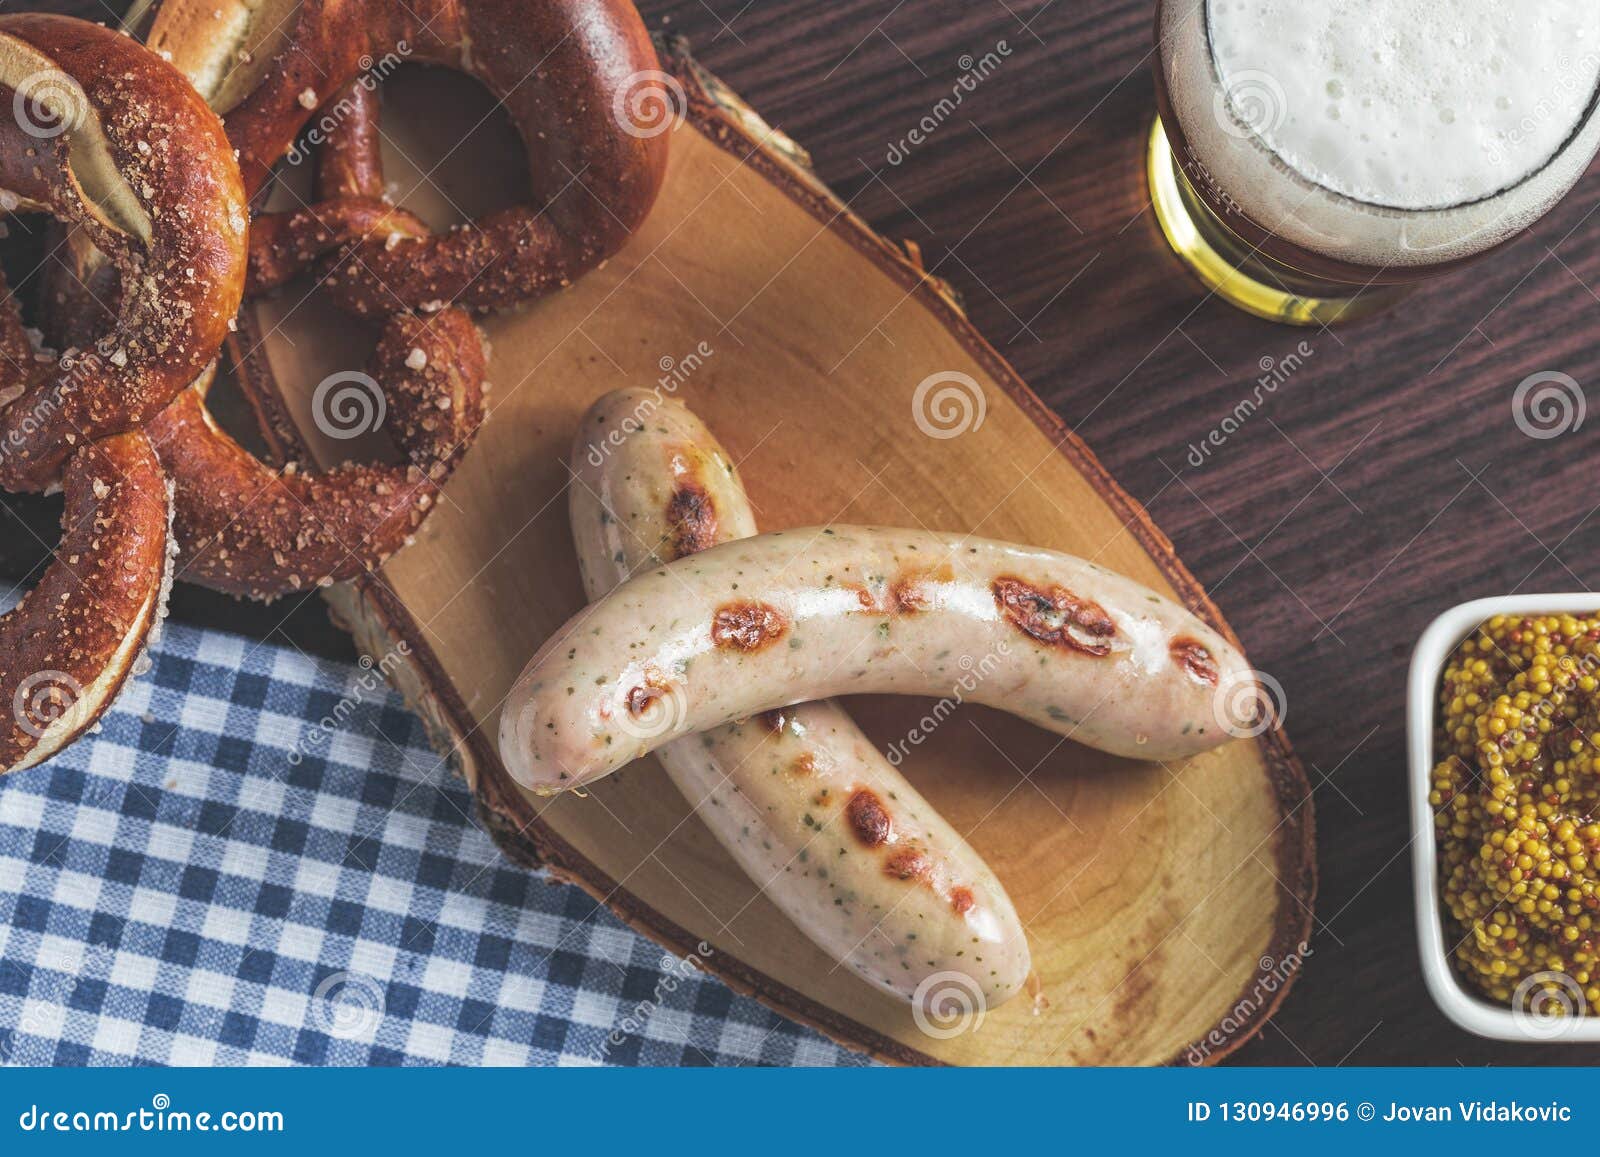 the bavarian weisswurst, pretzel and mustard